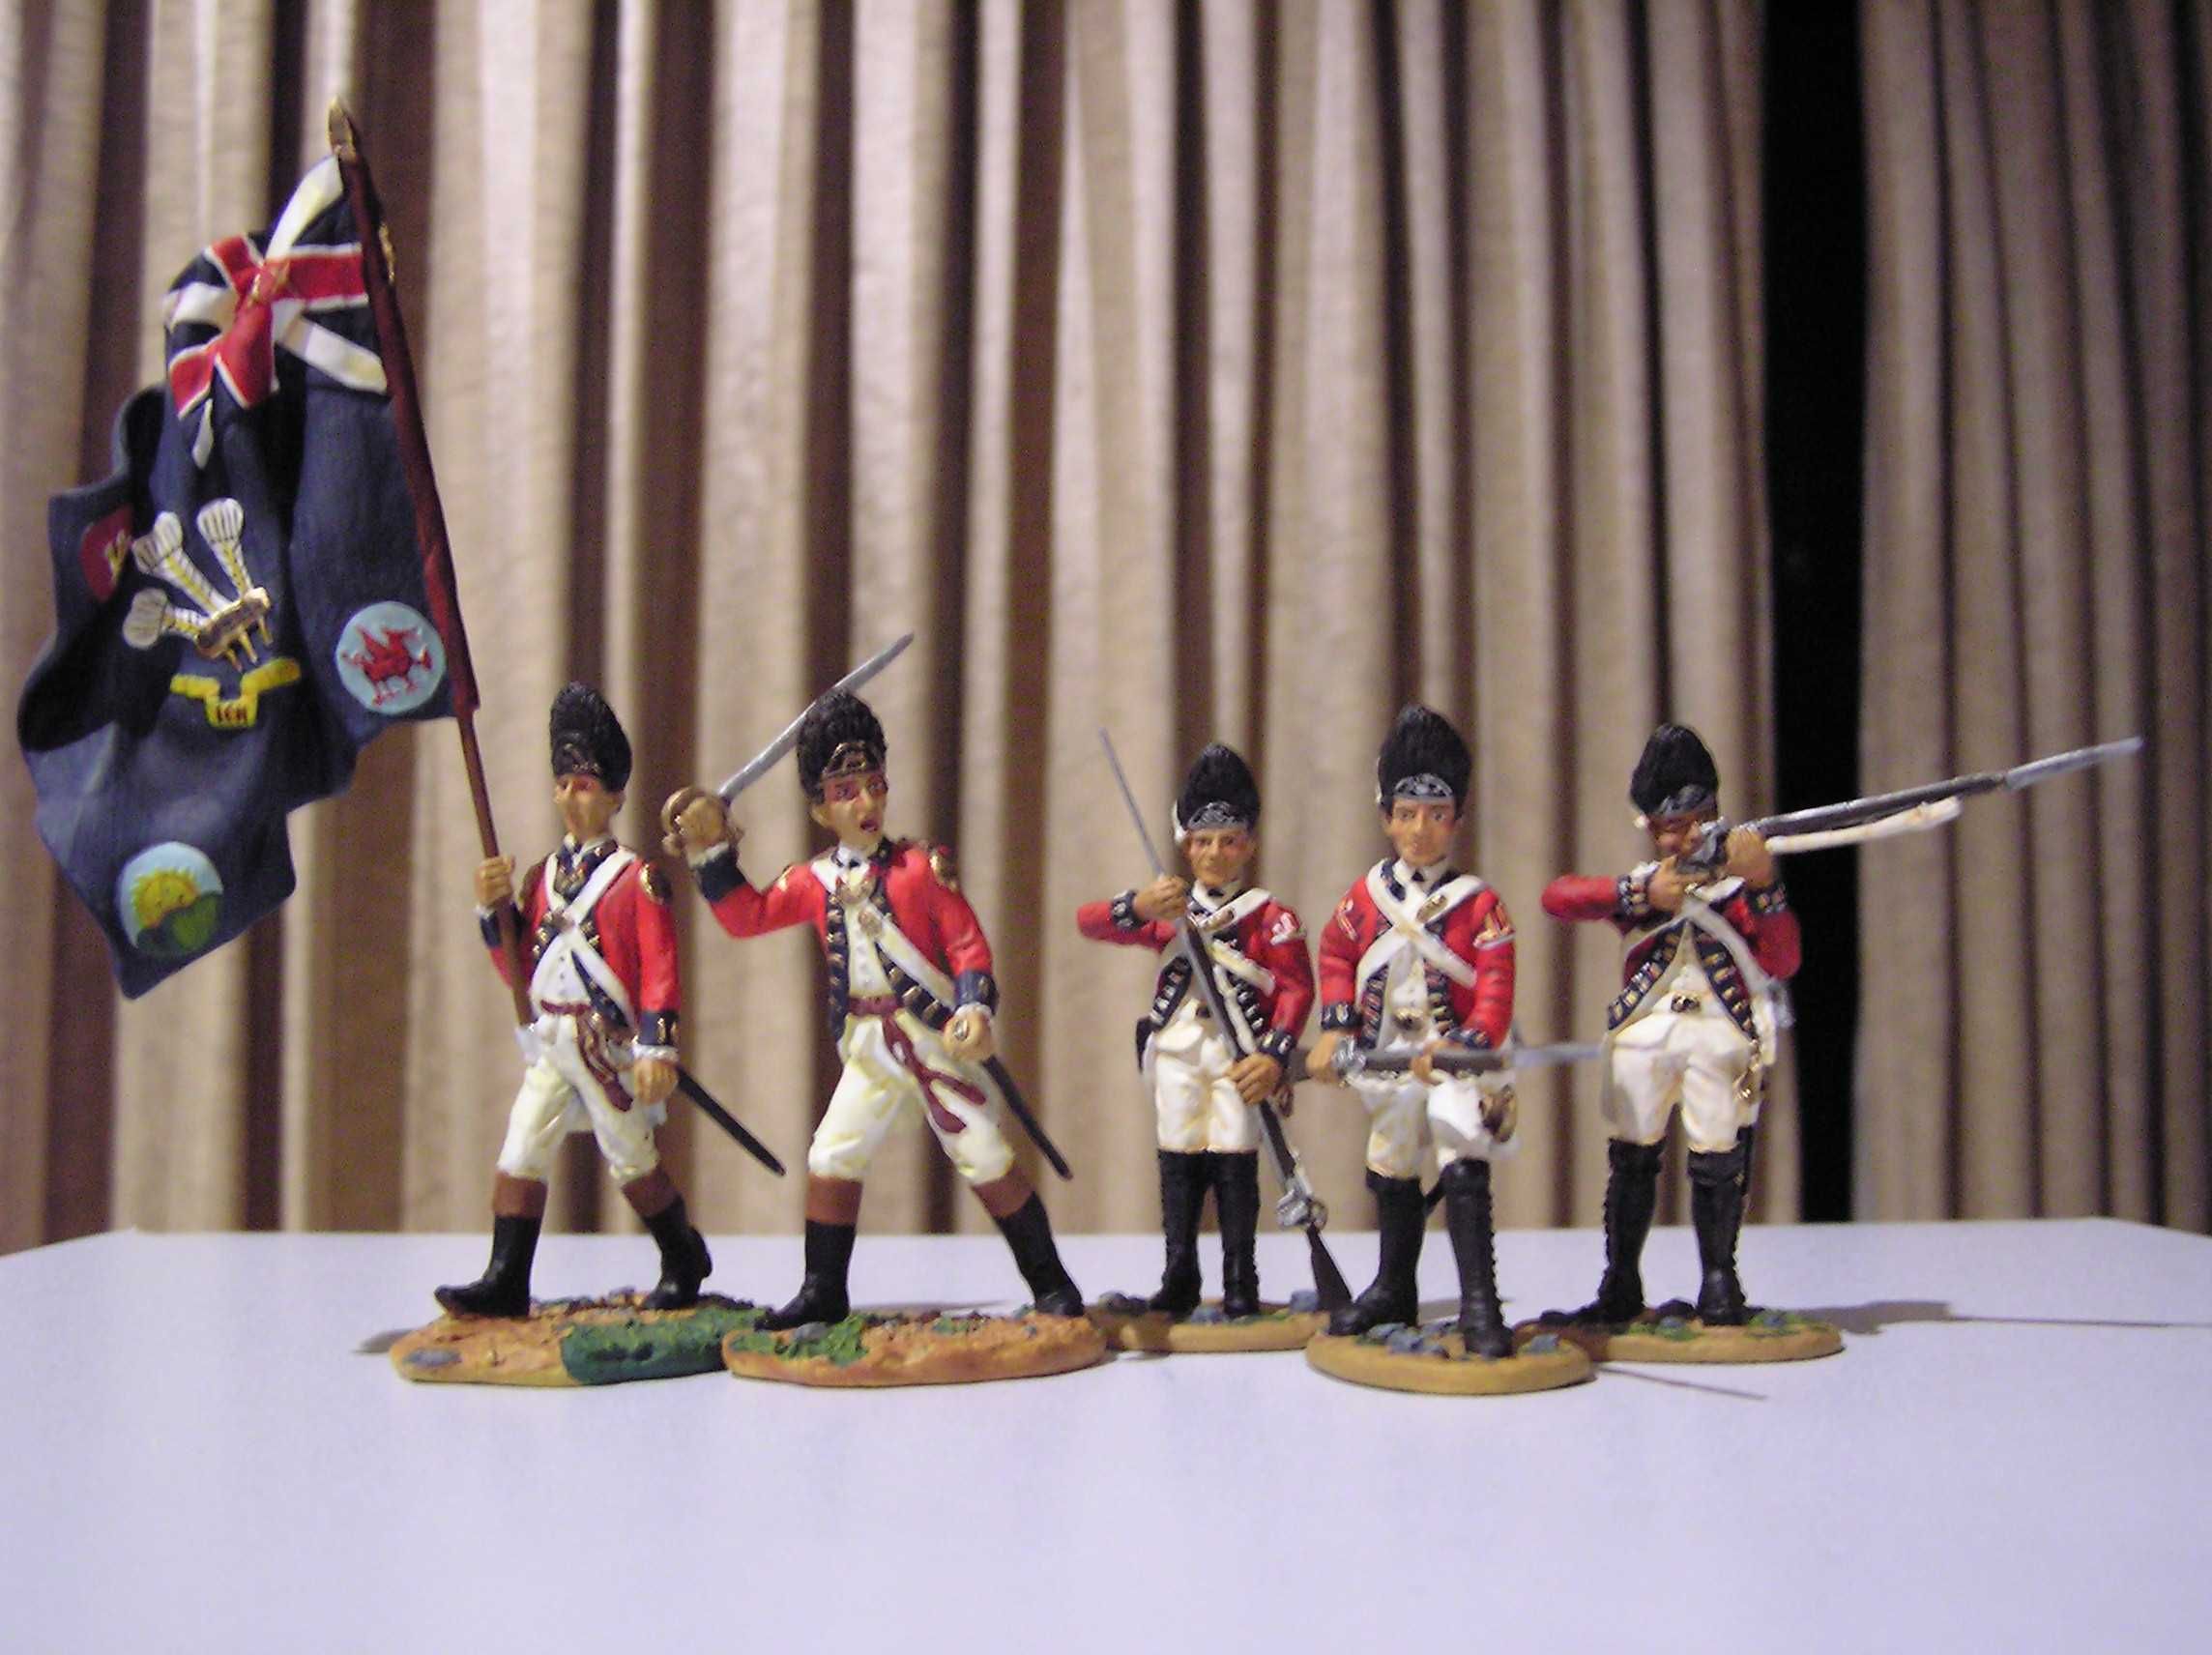 Vários conjuntos de soldados de chumbo da marca BRITAINS.